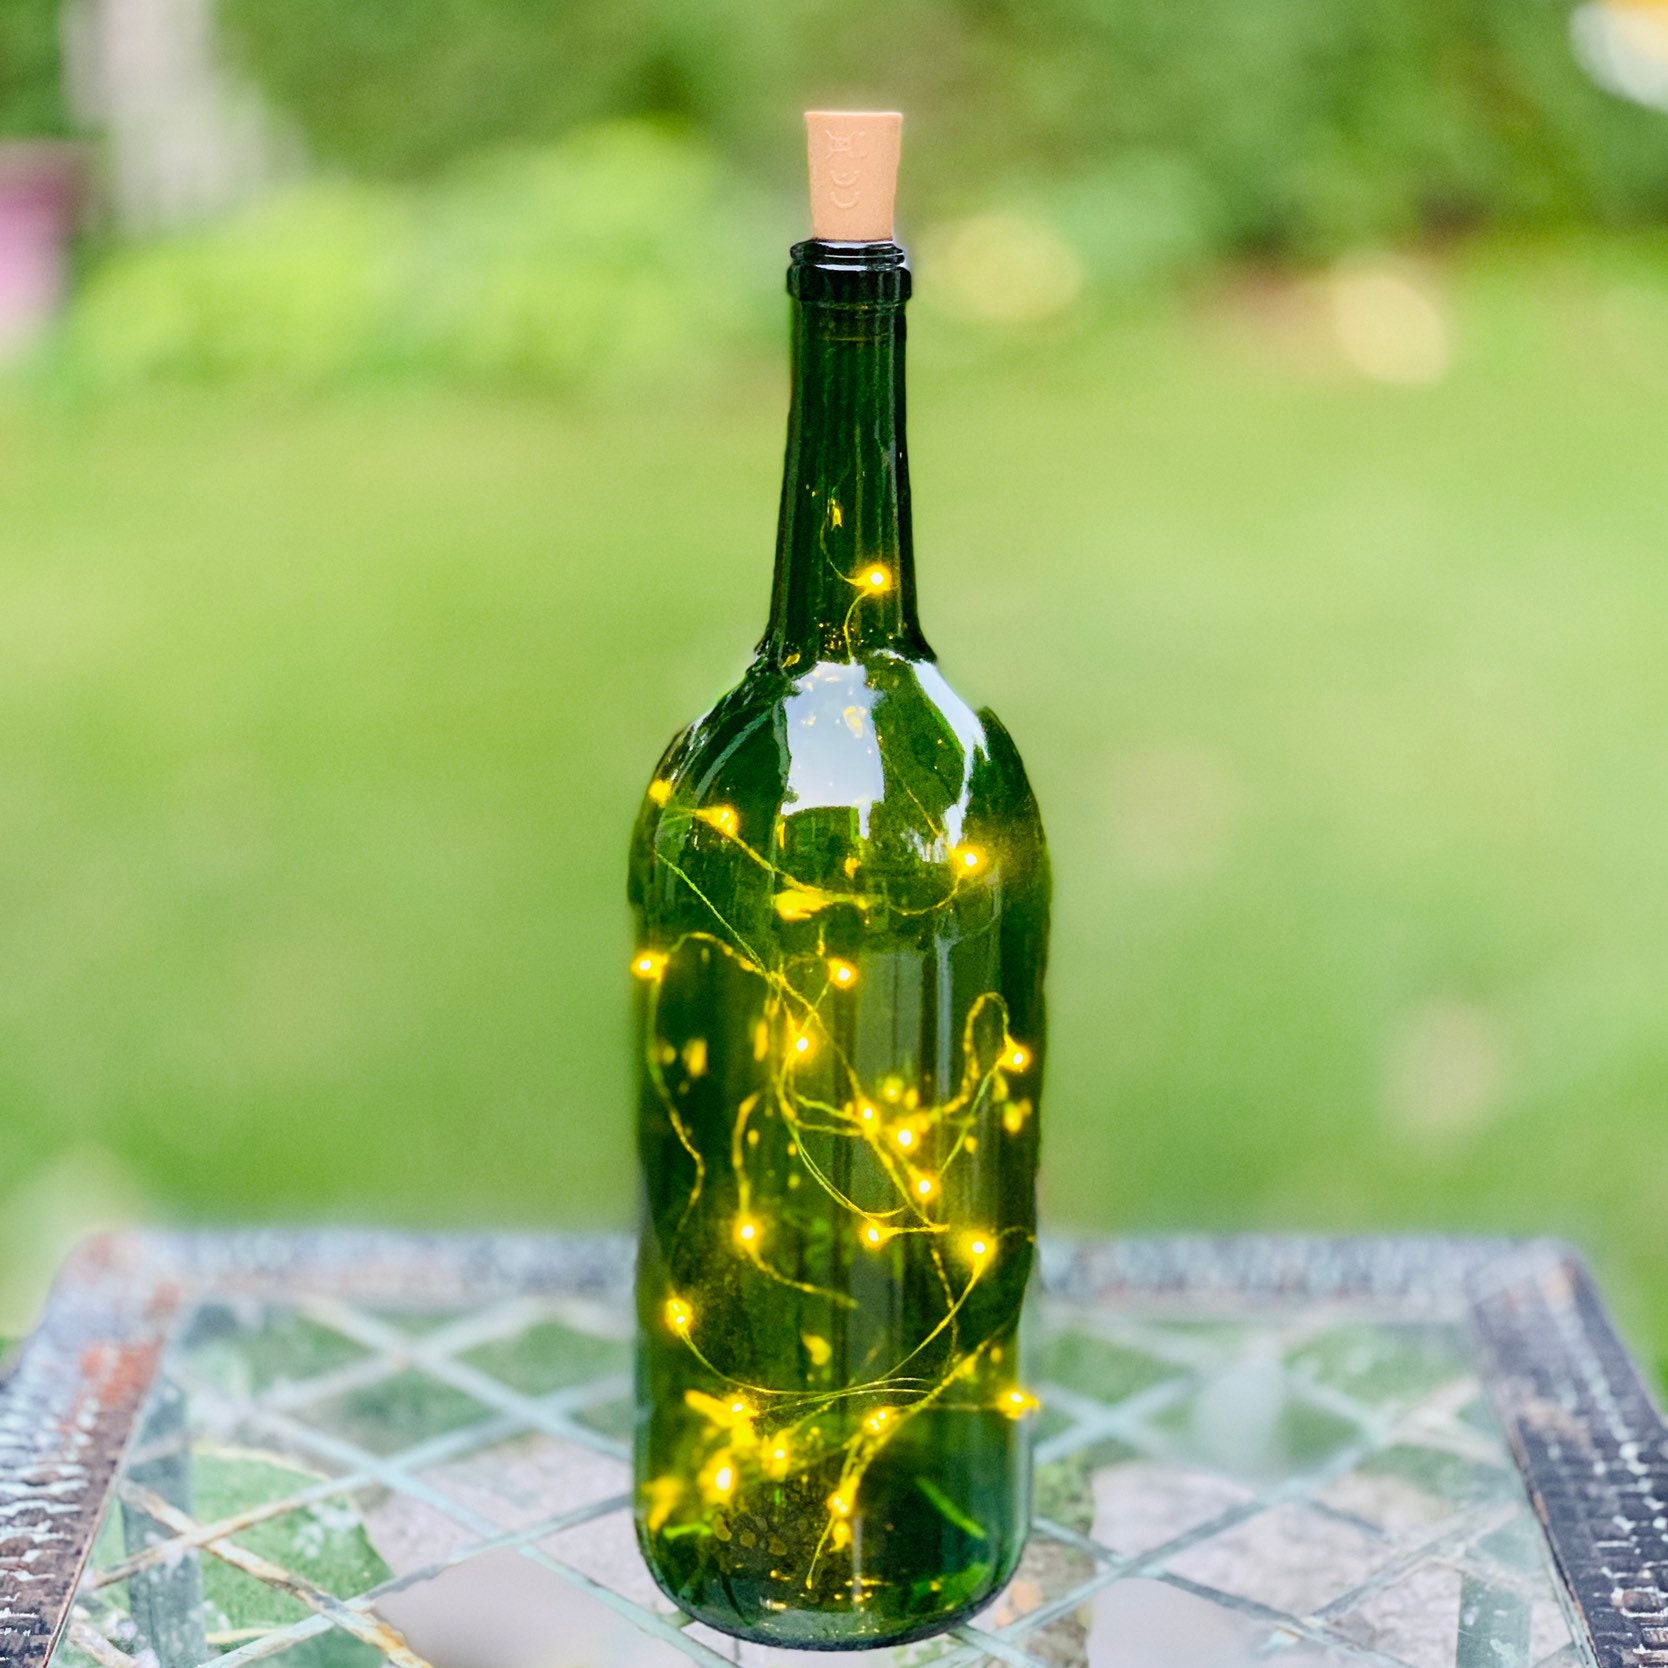 HTAIGUO Lot de 10 20 lumières de bouteille de vin LED avec liège